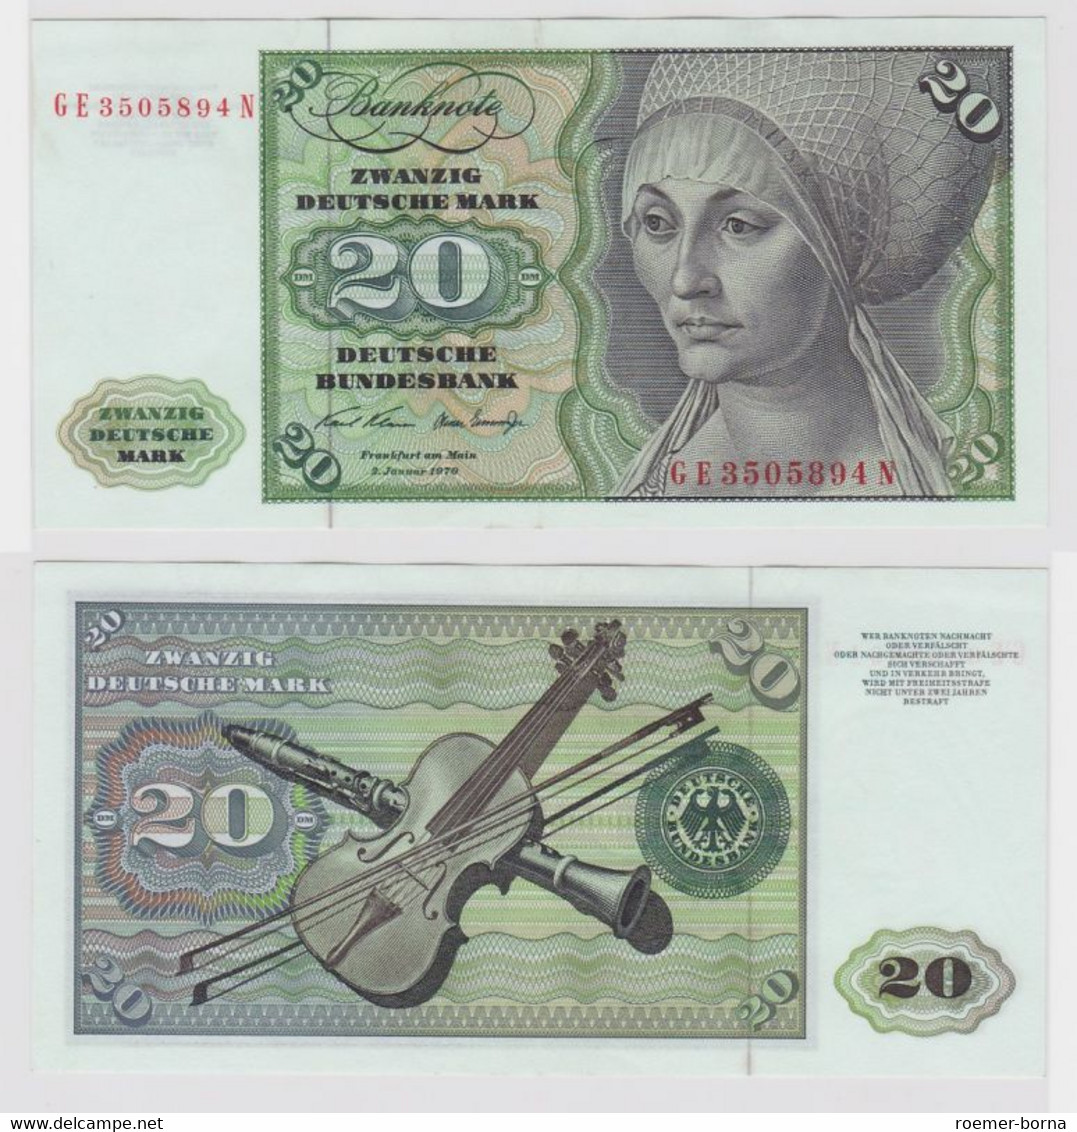 T110384 Banknote 20 DM Deutsche Mark Ro. 271b Schein 2.Jan. 1970 KN GE 3505894 N - 20 DM